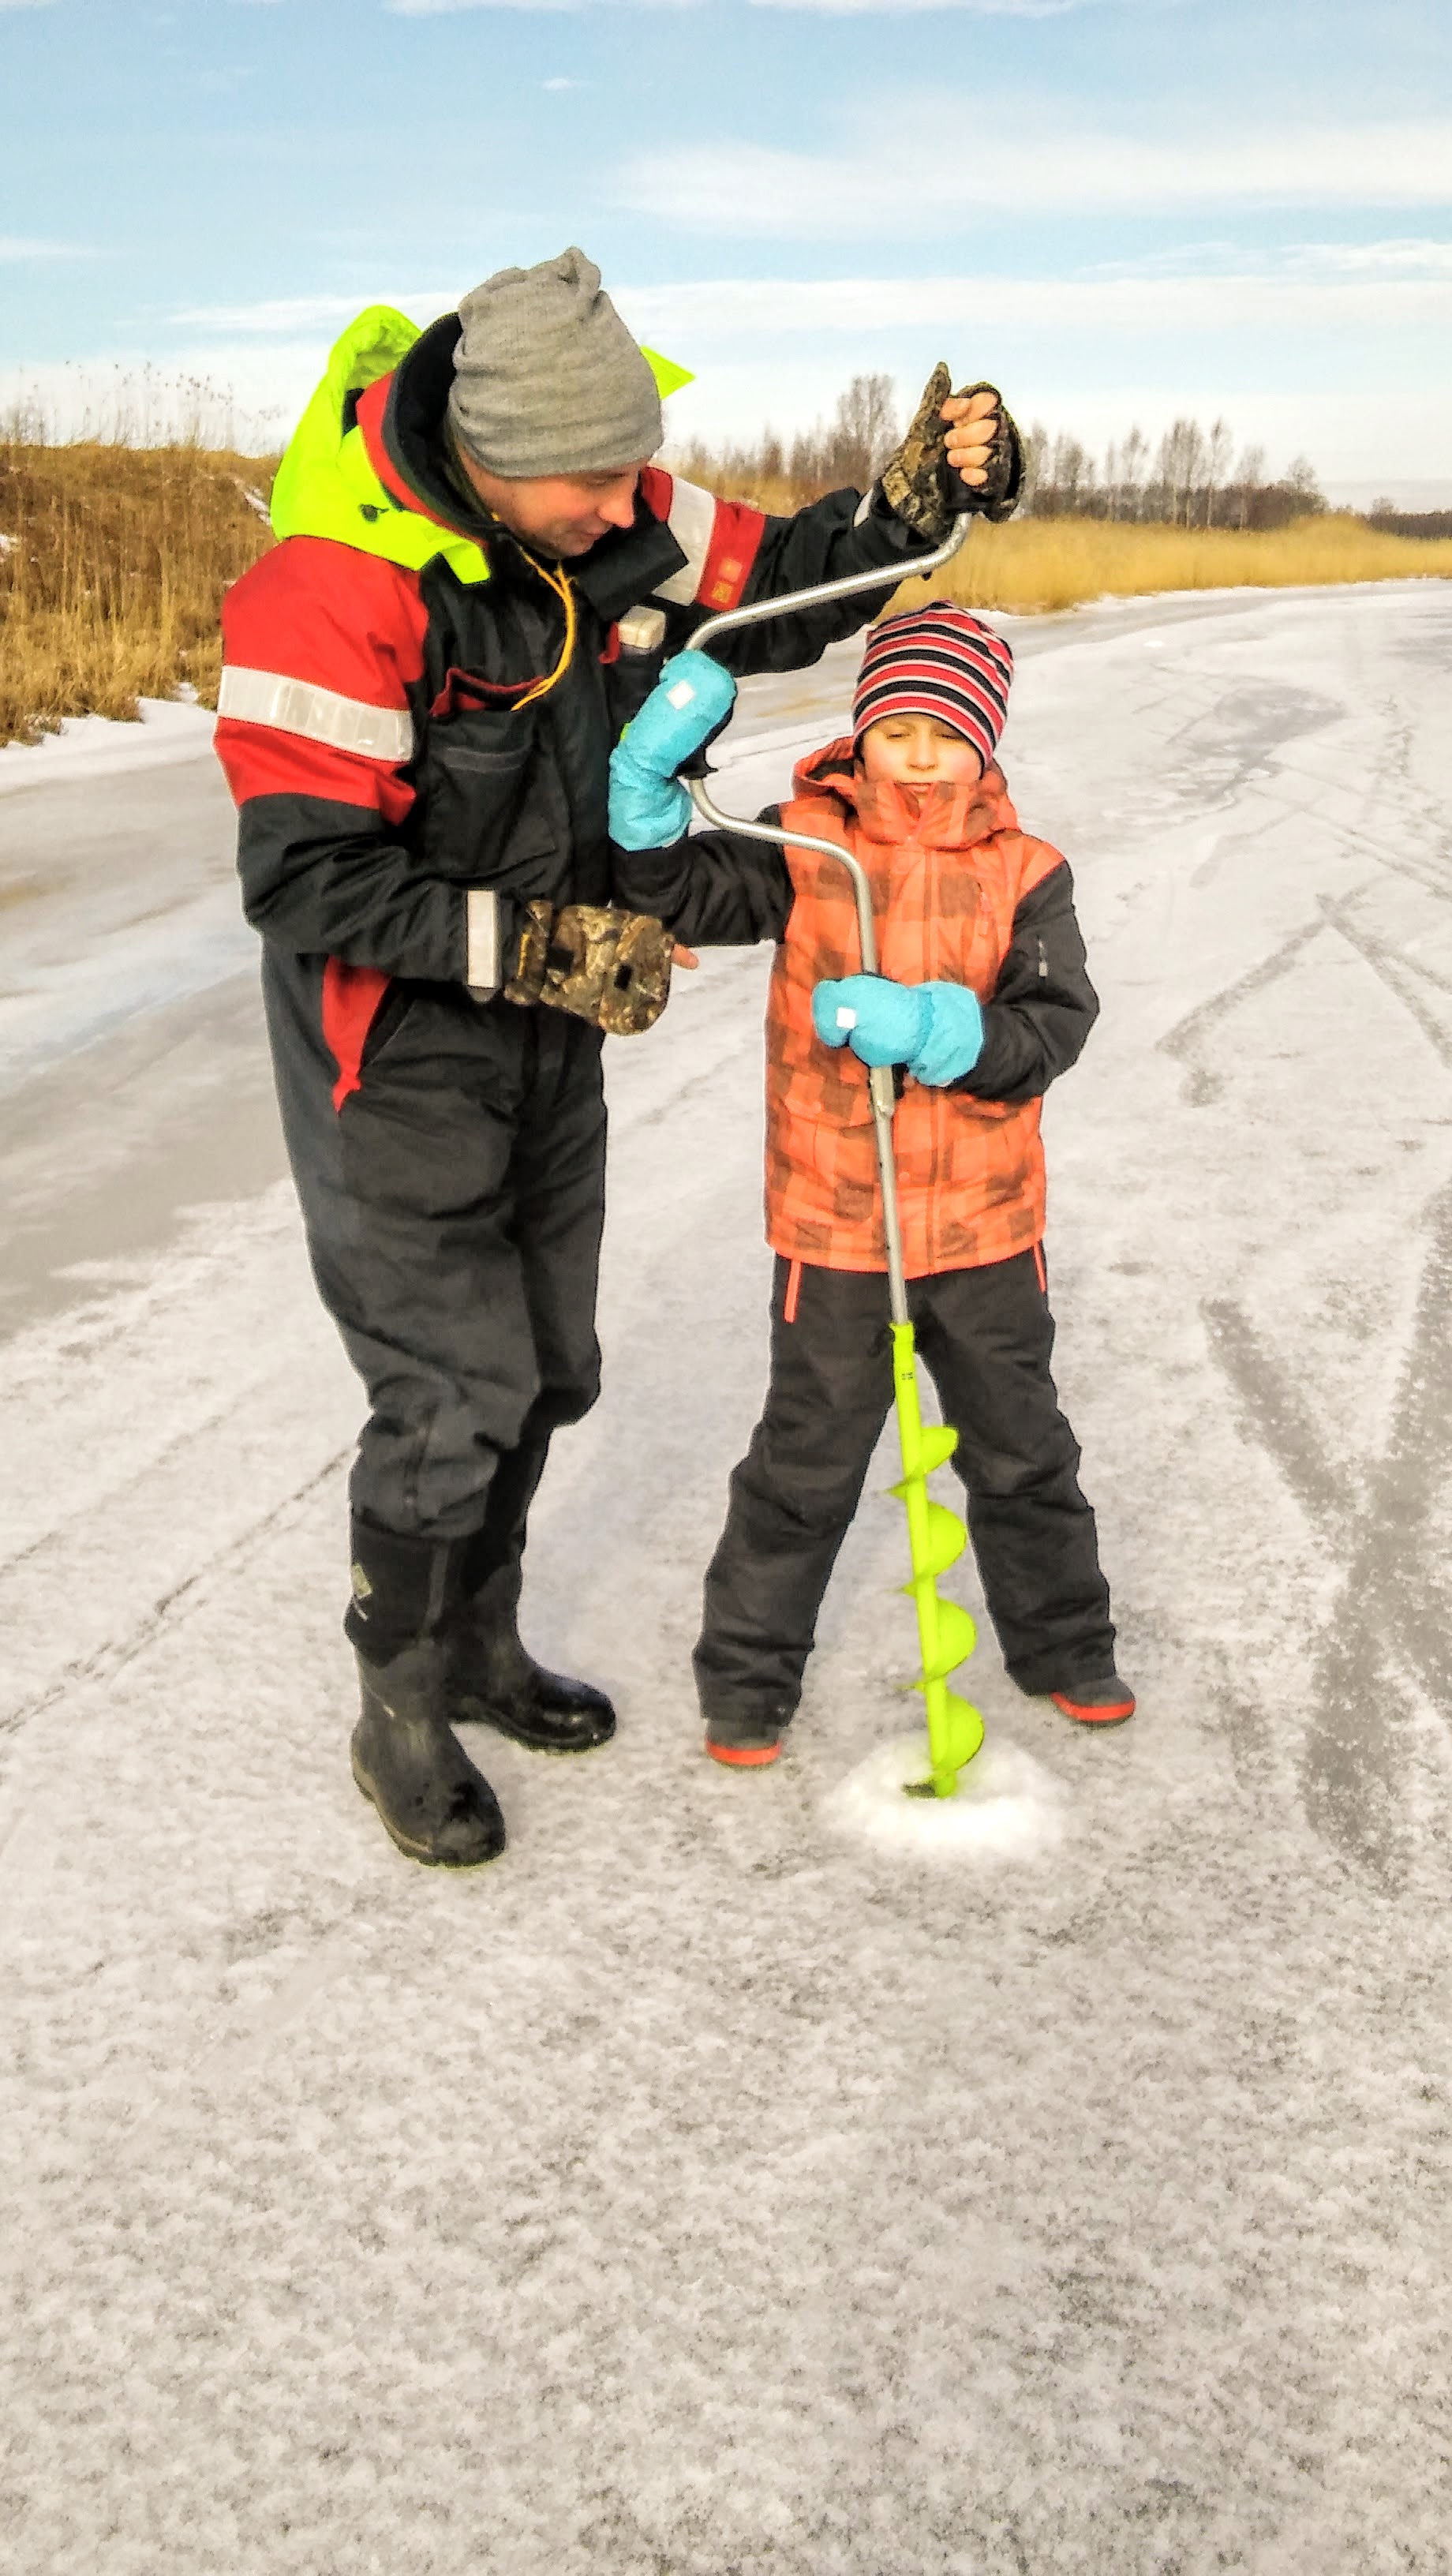 Mees aitab väiksel poisil kalastamiseks jääauku puurida